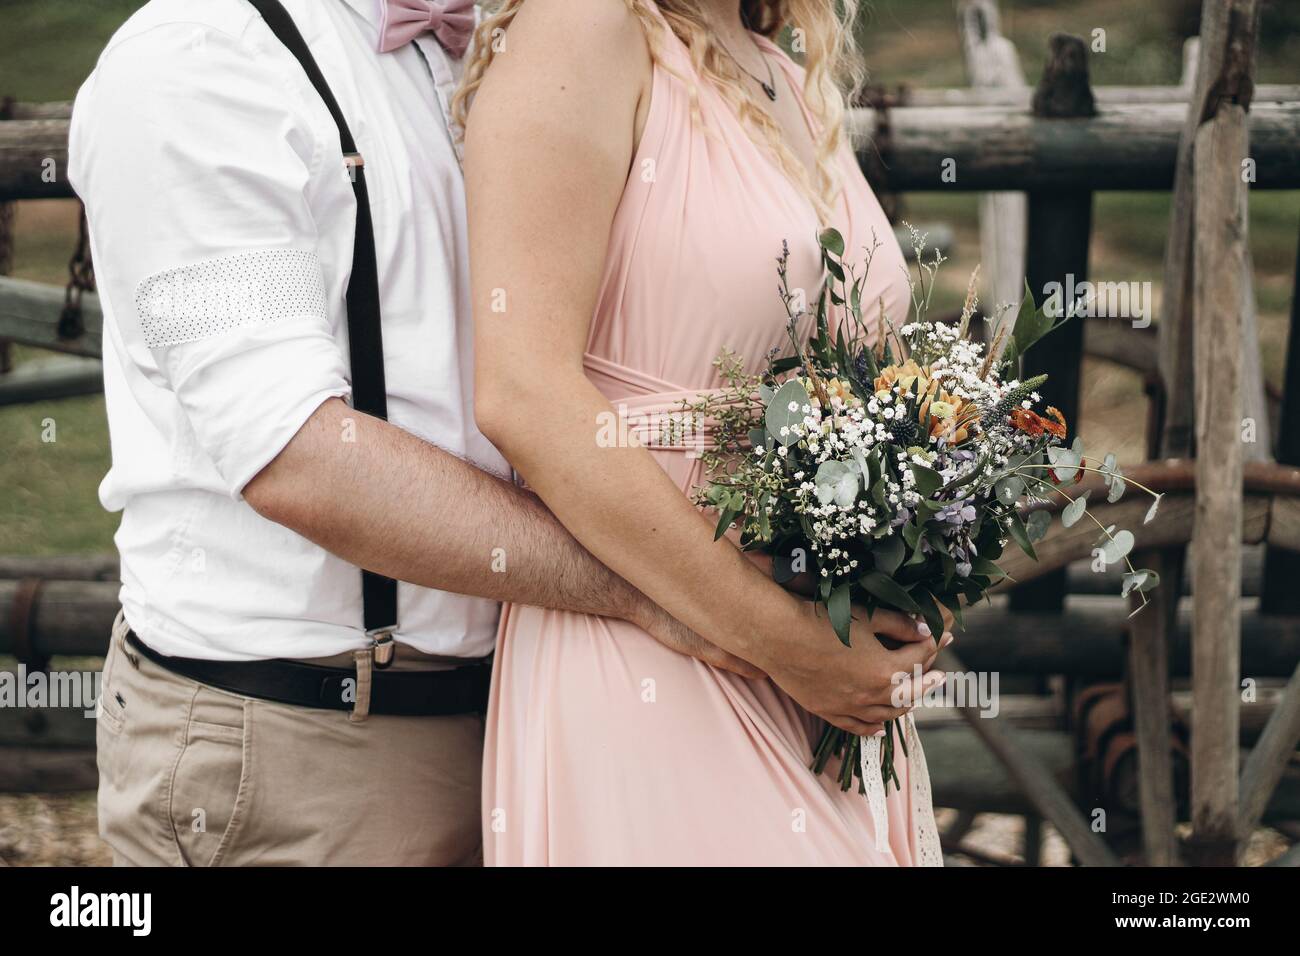 Nahaufnahme des Bräutigams, der eine Braut in einem wunderschönen rosa Kleid umarmt. Frau mit Blumenstrauß in den Händen. Boho Hochzeit und Ehe Komposition. Engagement Stockfoto